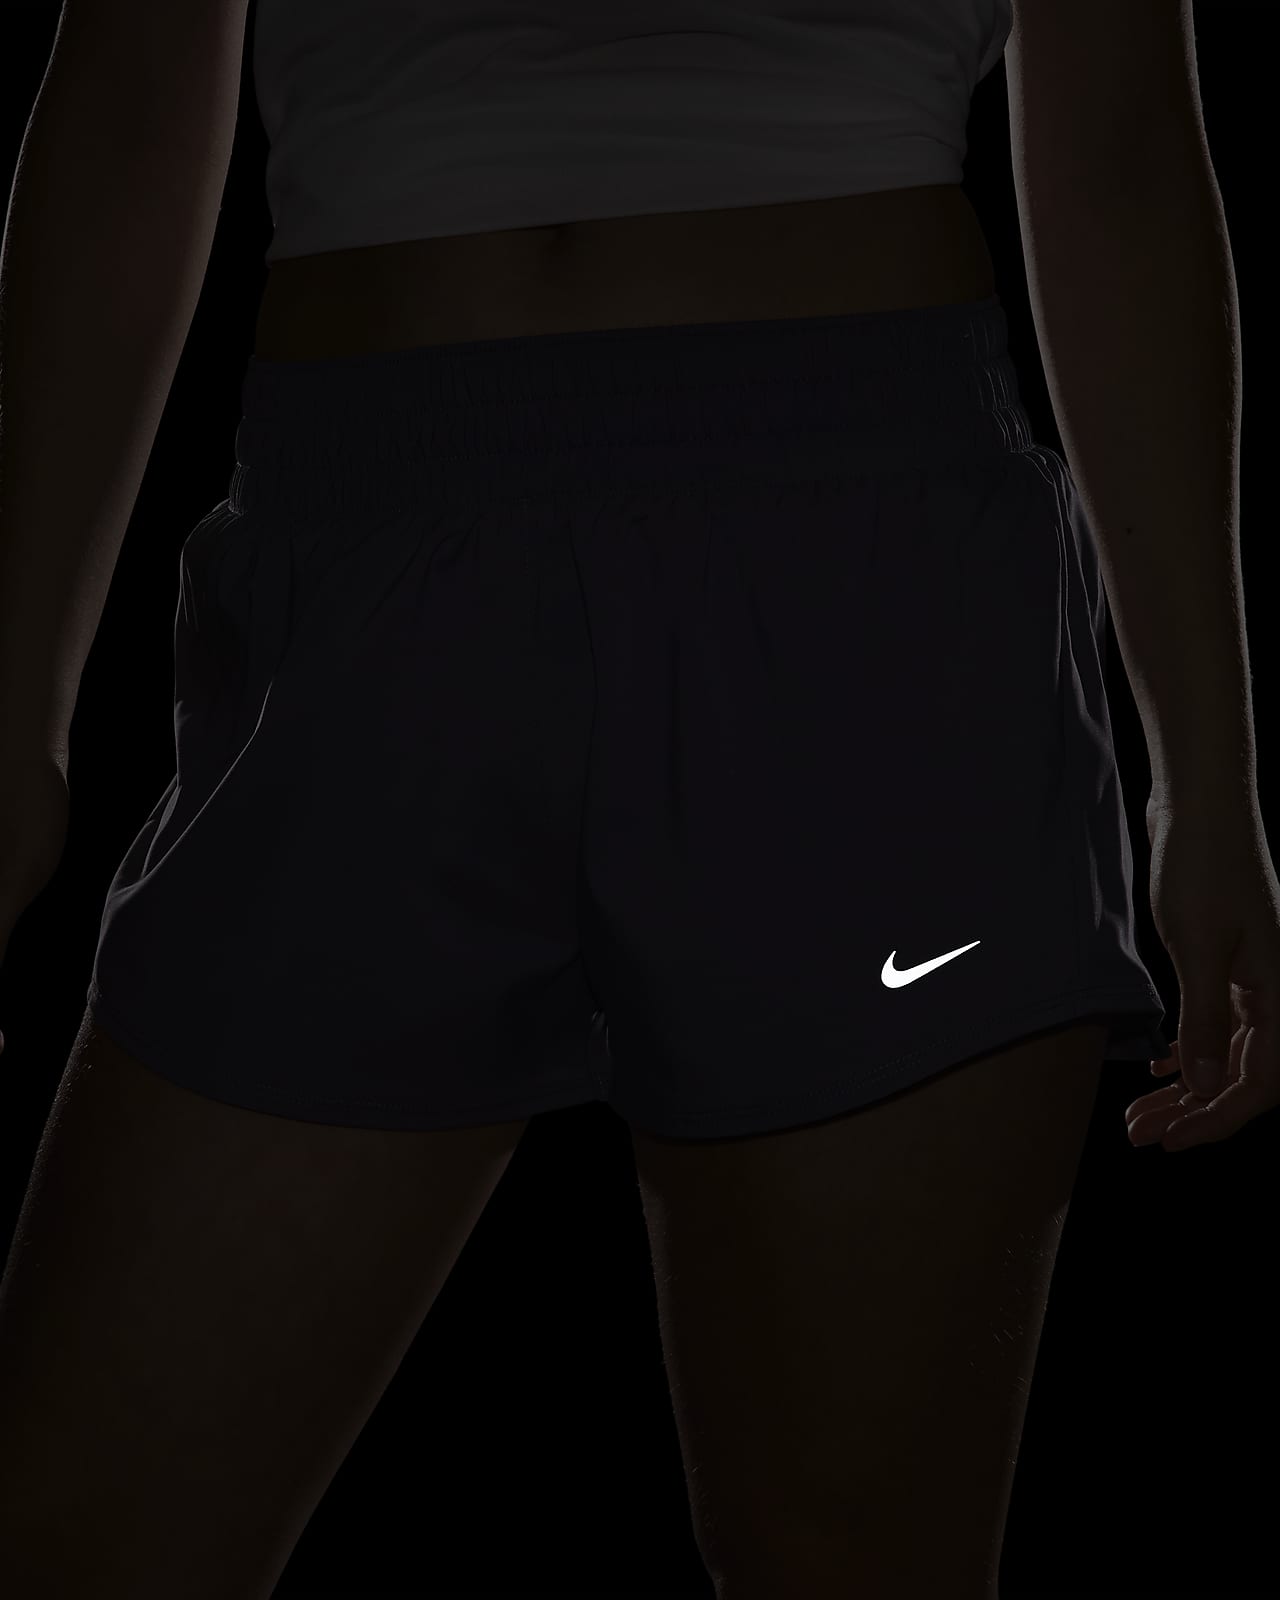 Nike Dri-FIT One 2-in-1 Short Women